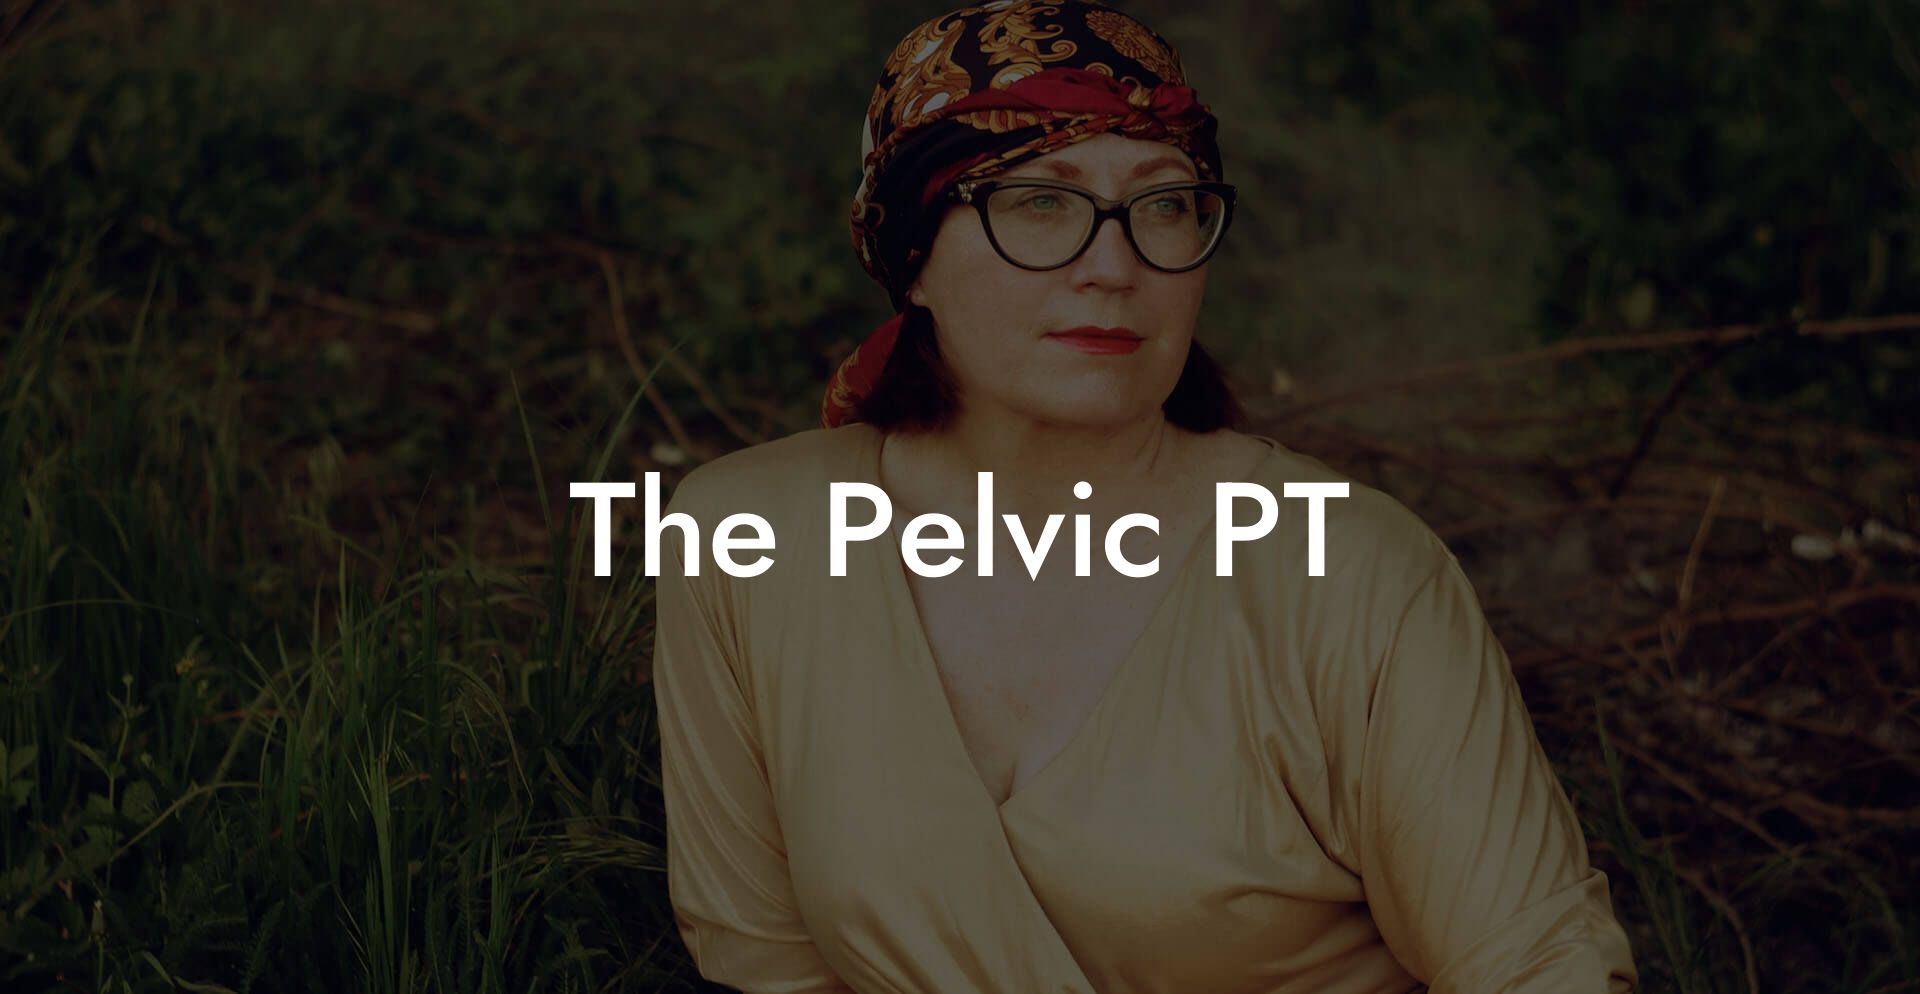 The Pelvic PT